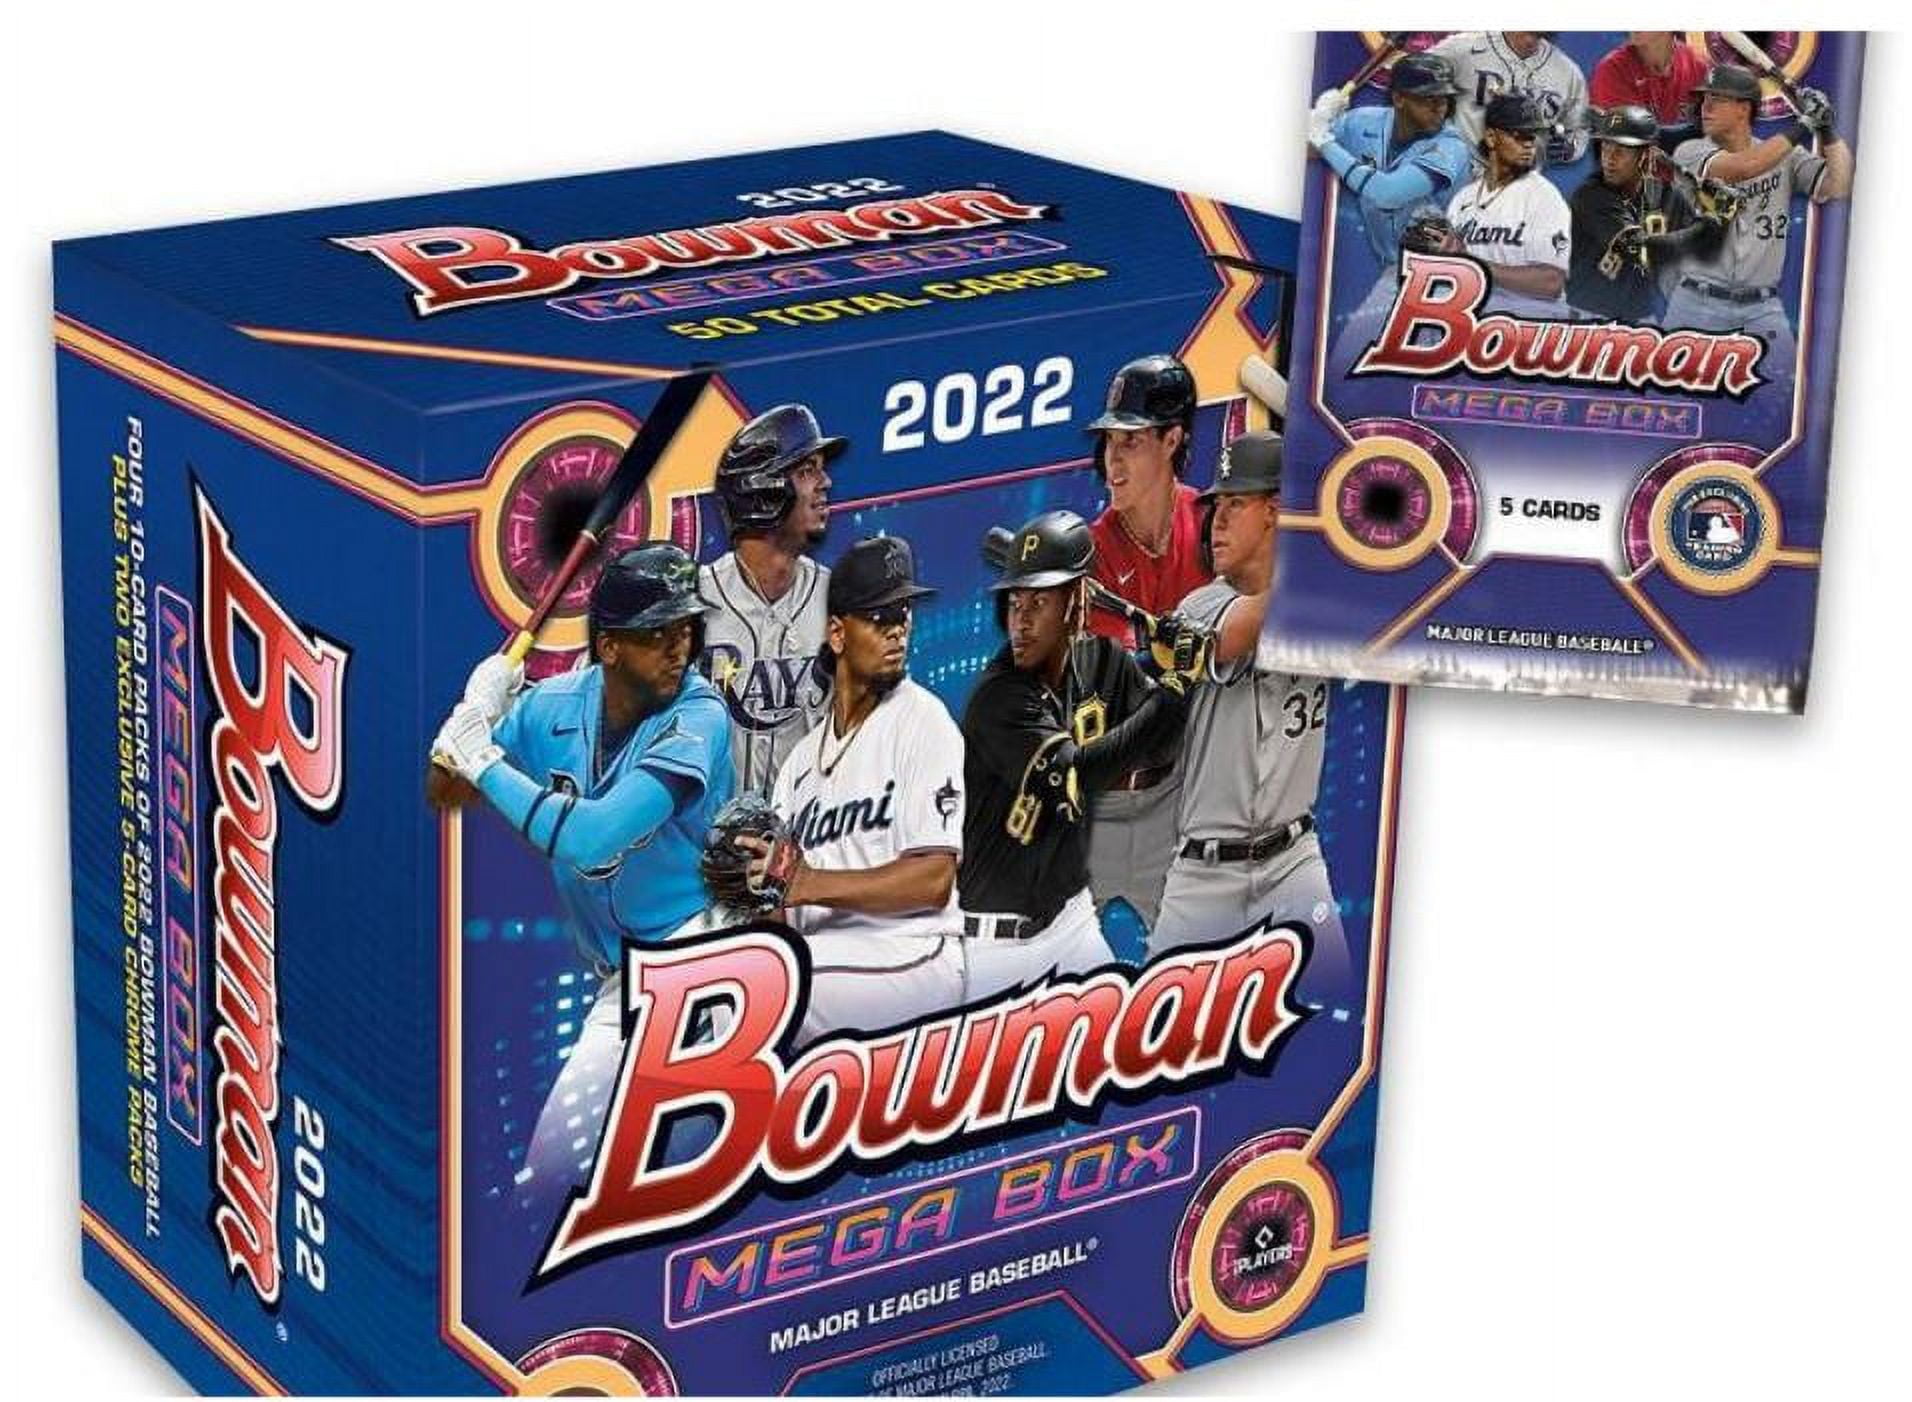 2022 Topps MLB Bowman Baseball Trading Card Mega Box - 50 cards!